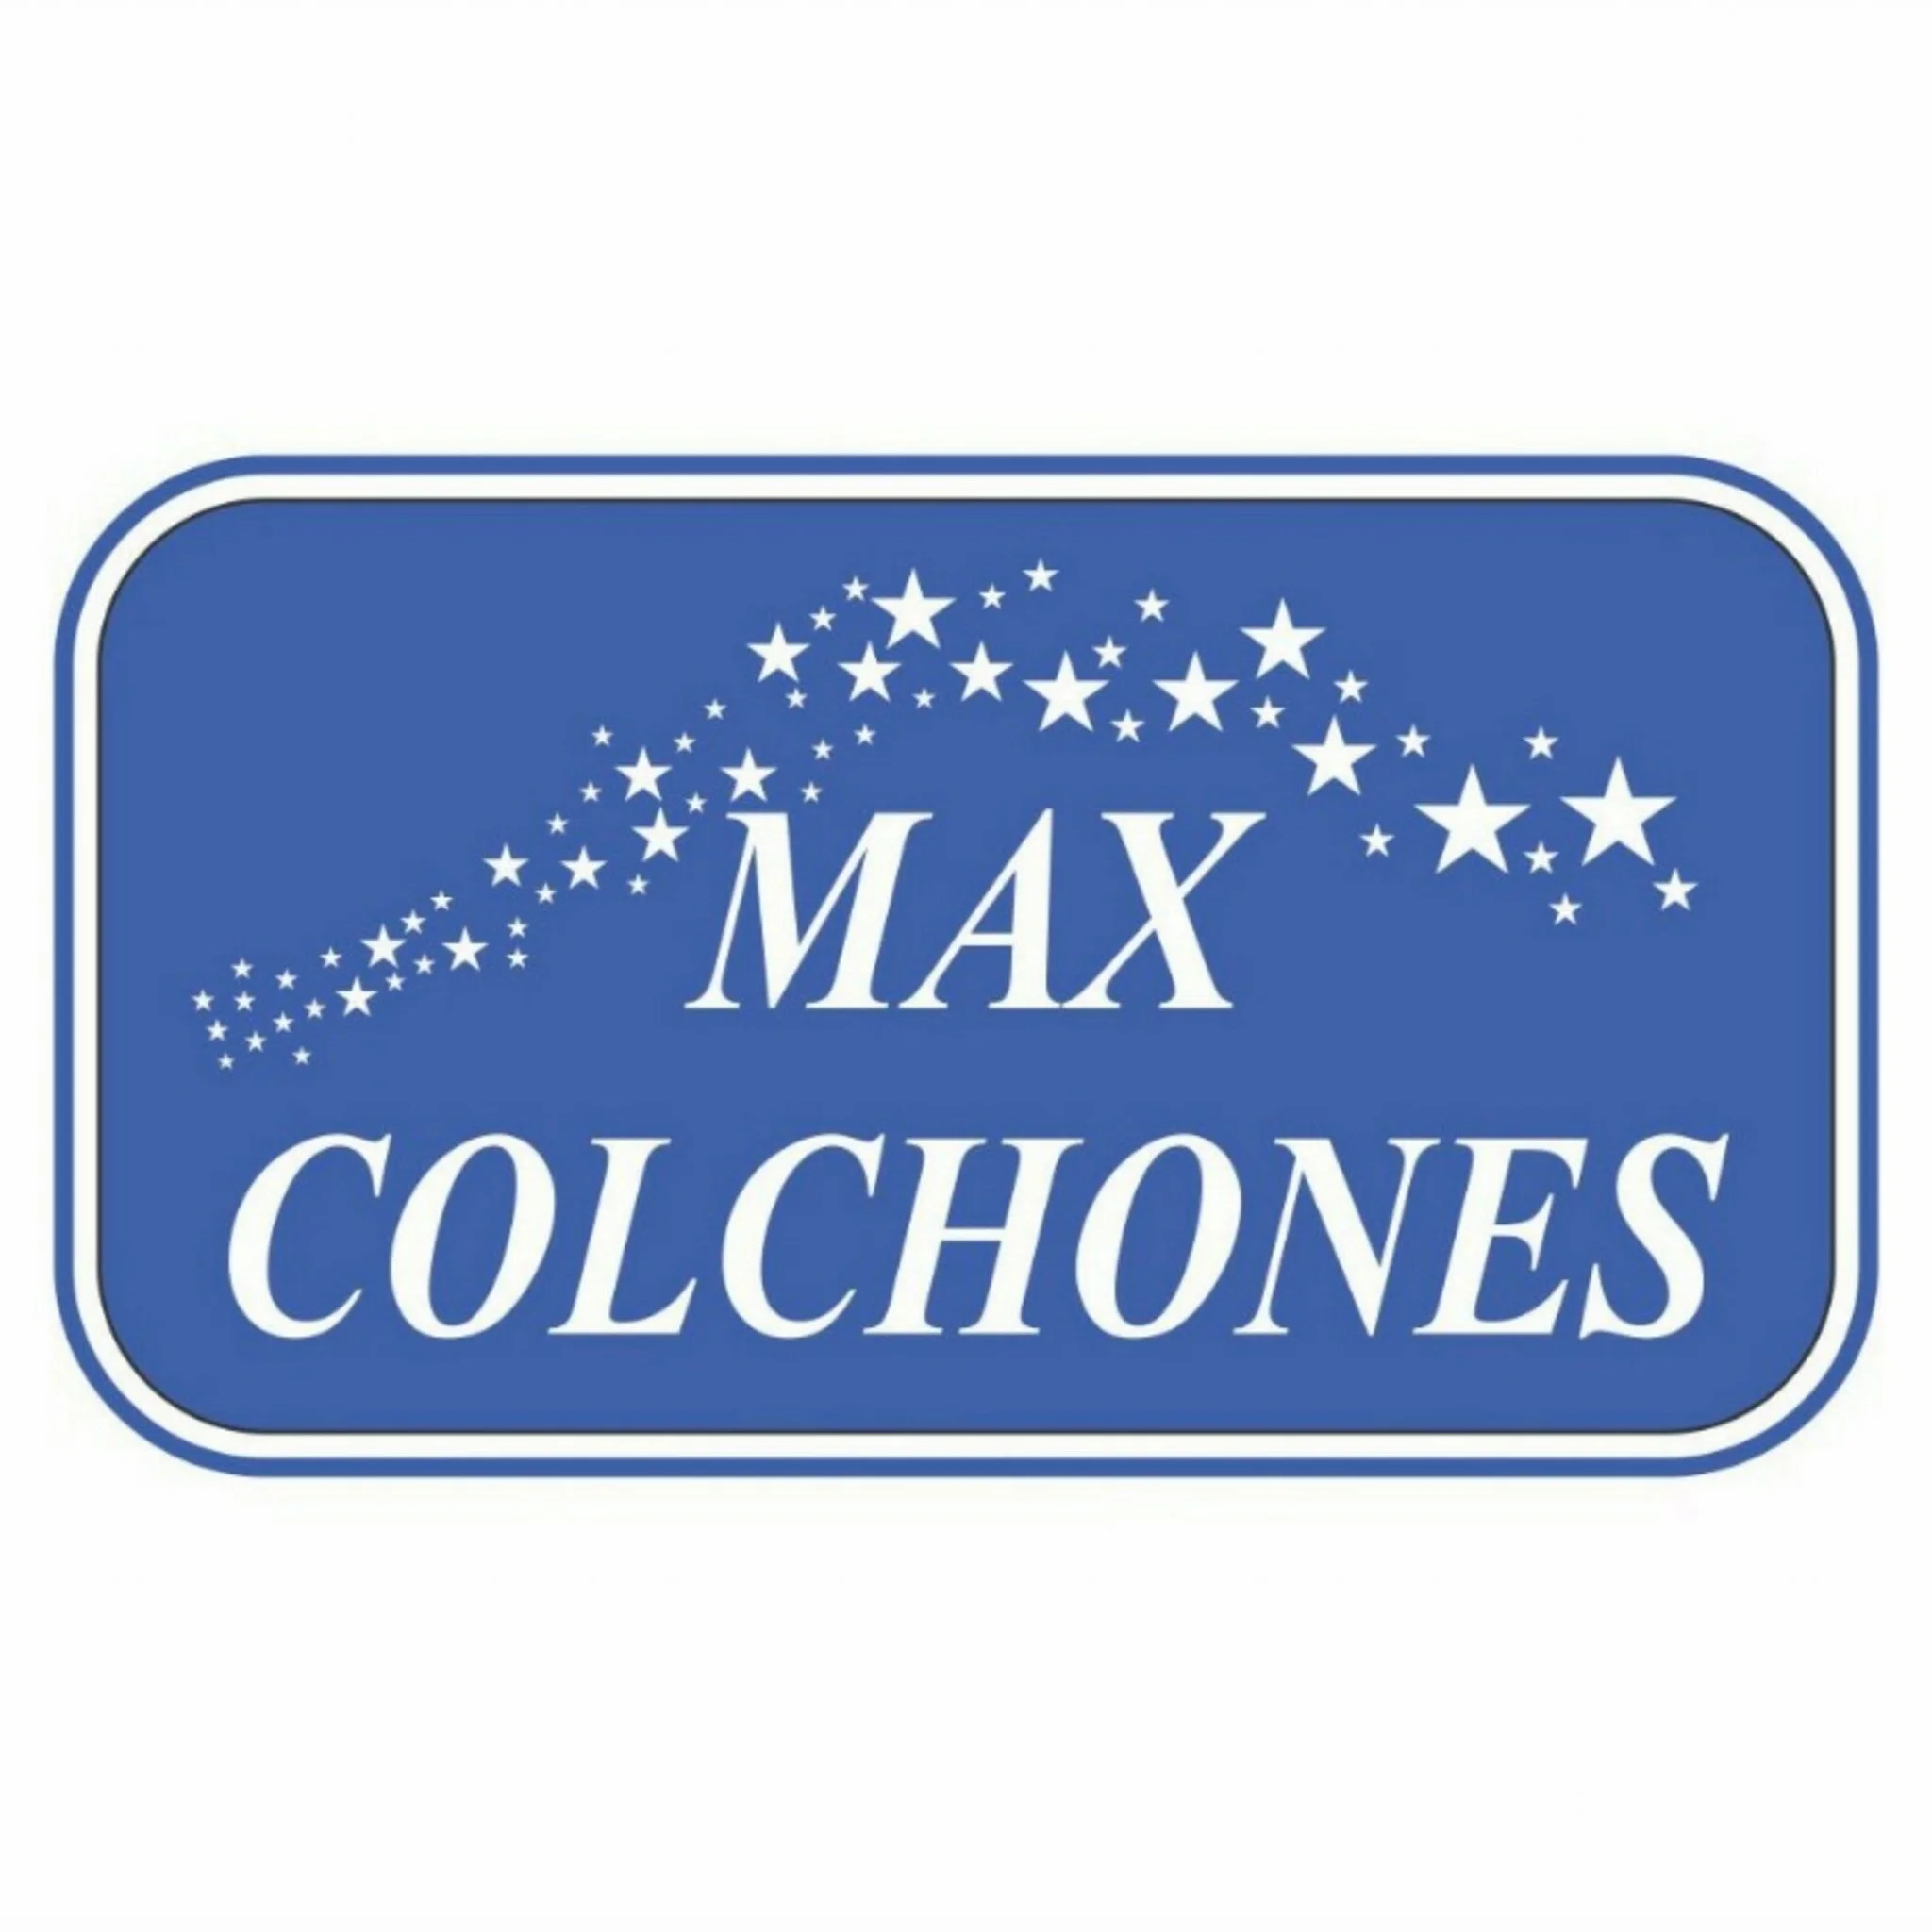 Colchones-maxcolchones-16383